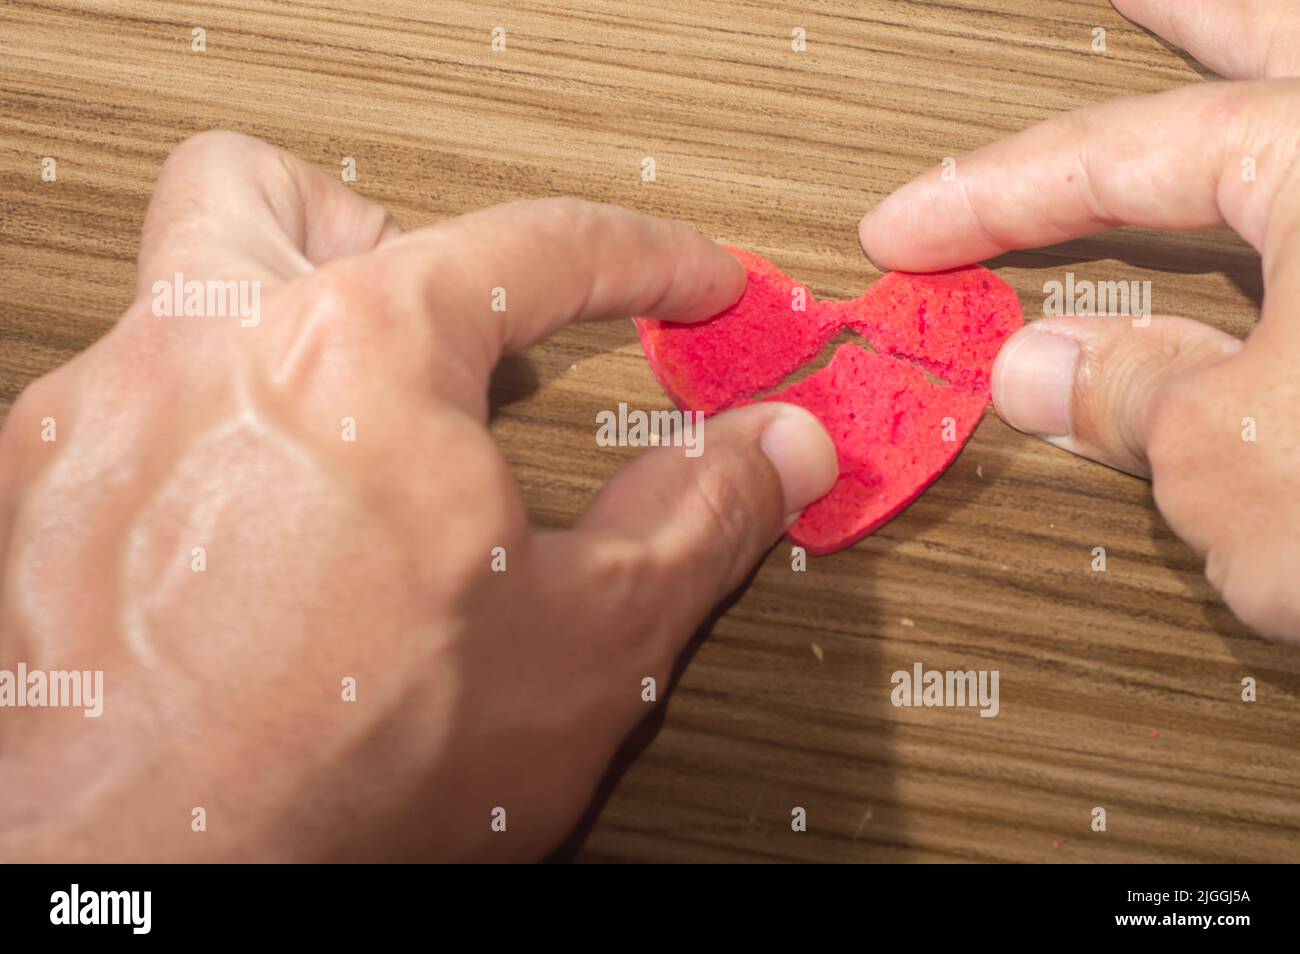 Coeur brisé travail en morceaux, en forme de coeur brisé biscuit sur une table en bois. Banque D'Images